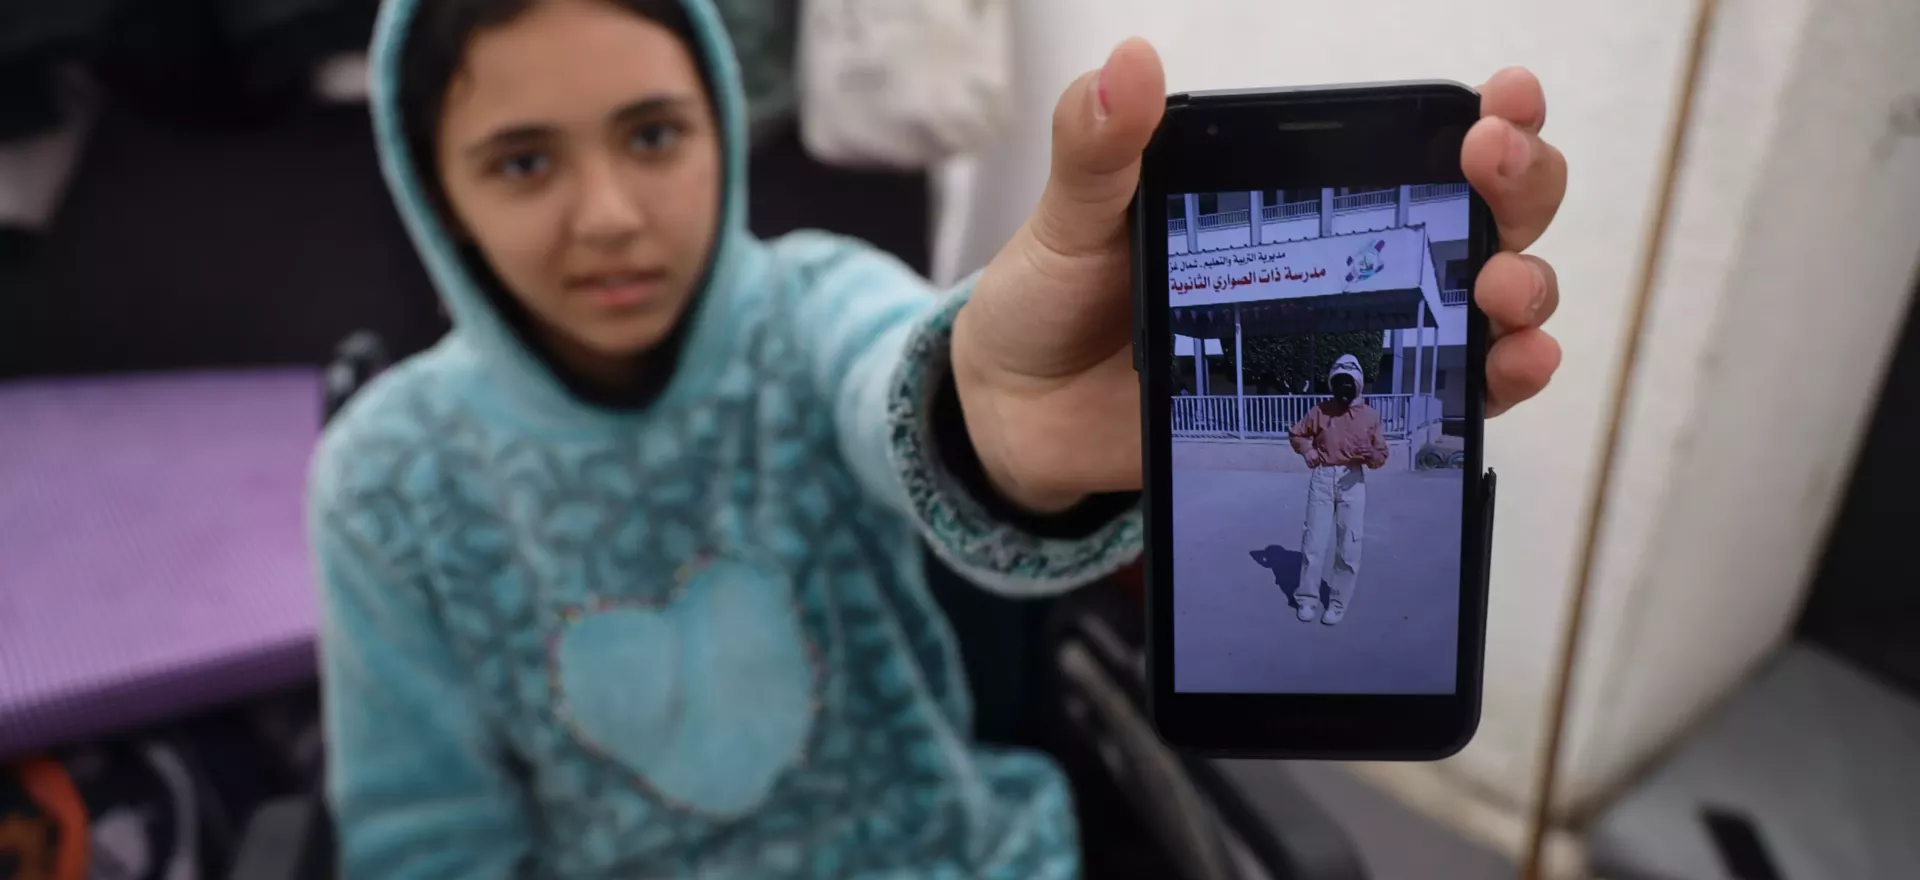 فتاة تجلس على كرسي متحرك تحمل هاتفها المحمول لتظهر صورة لها قبل إصابتها.